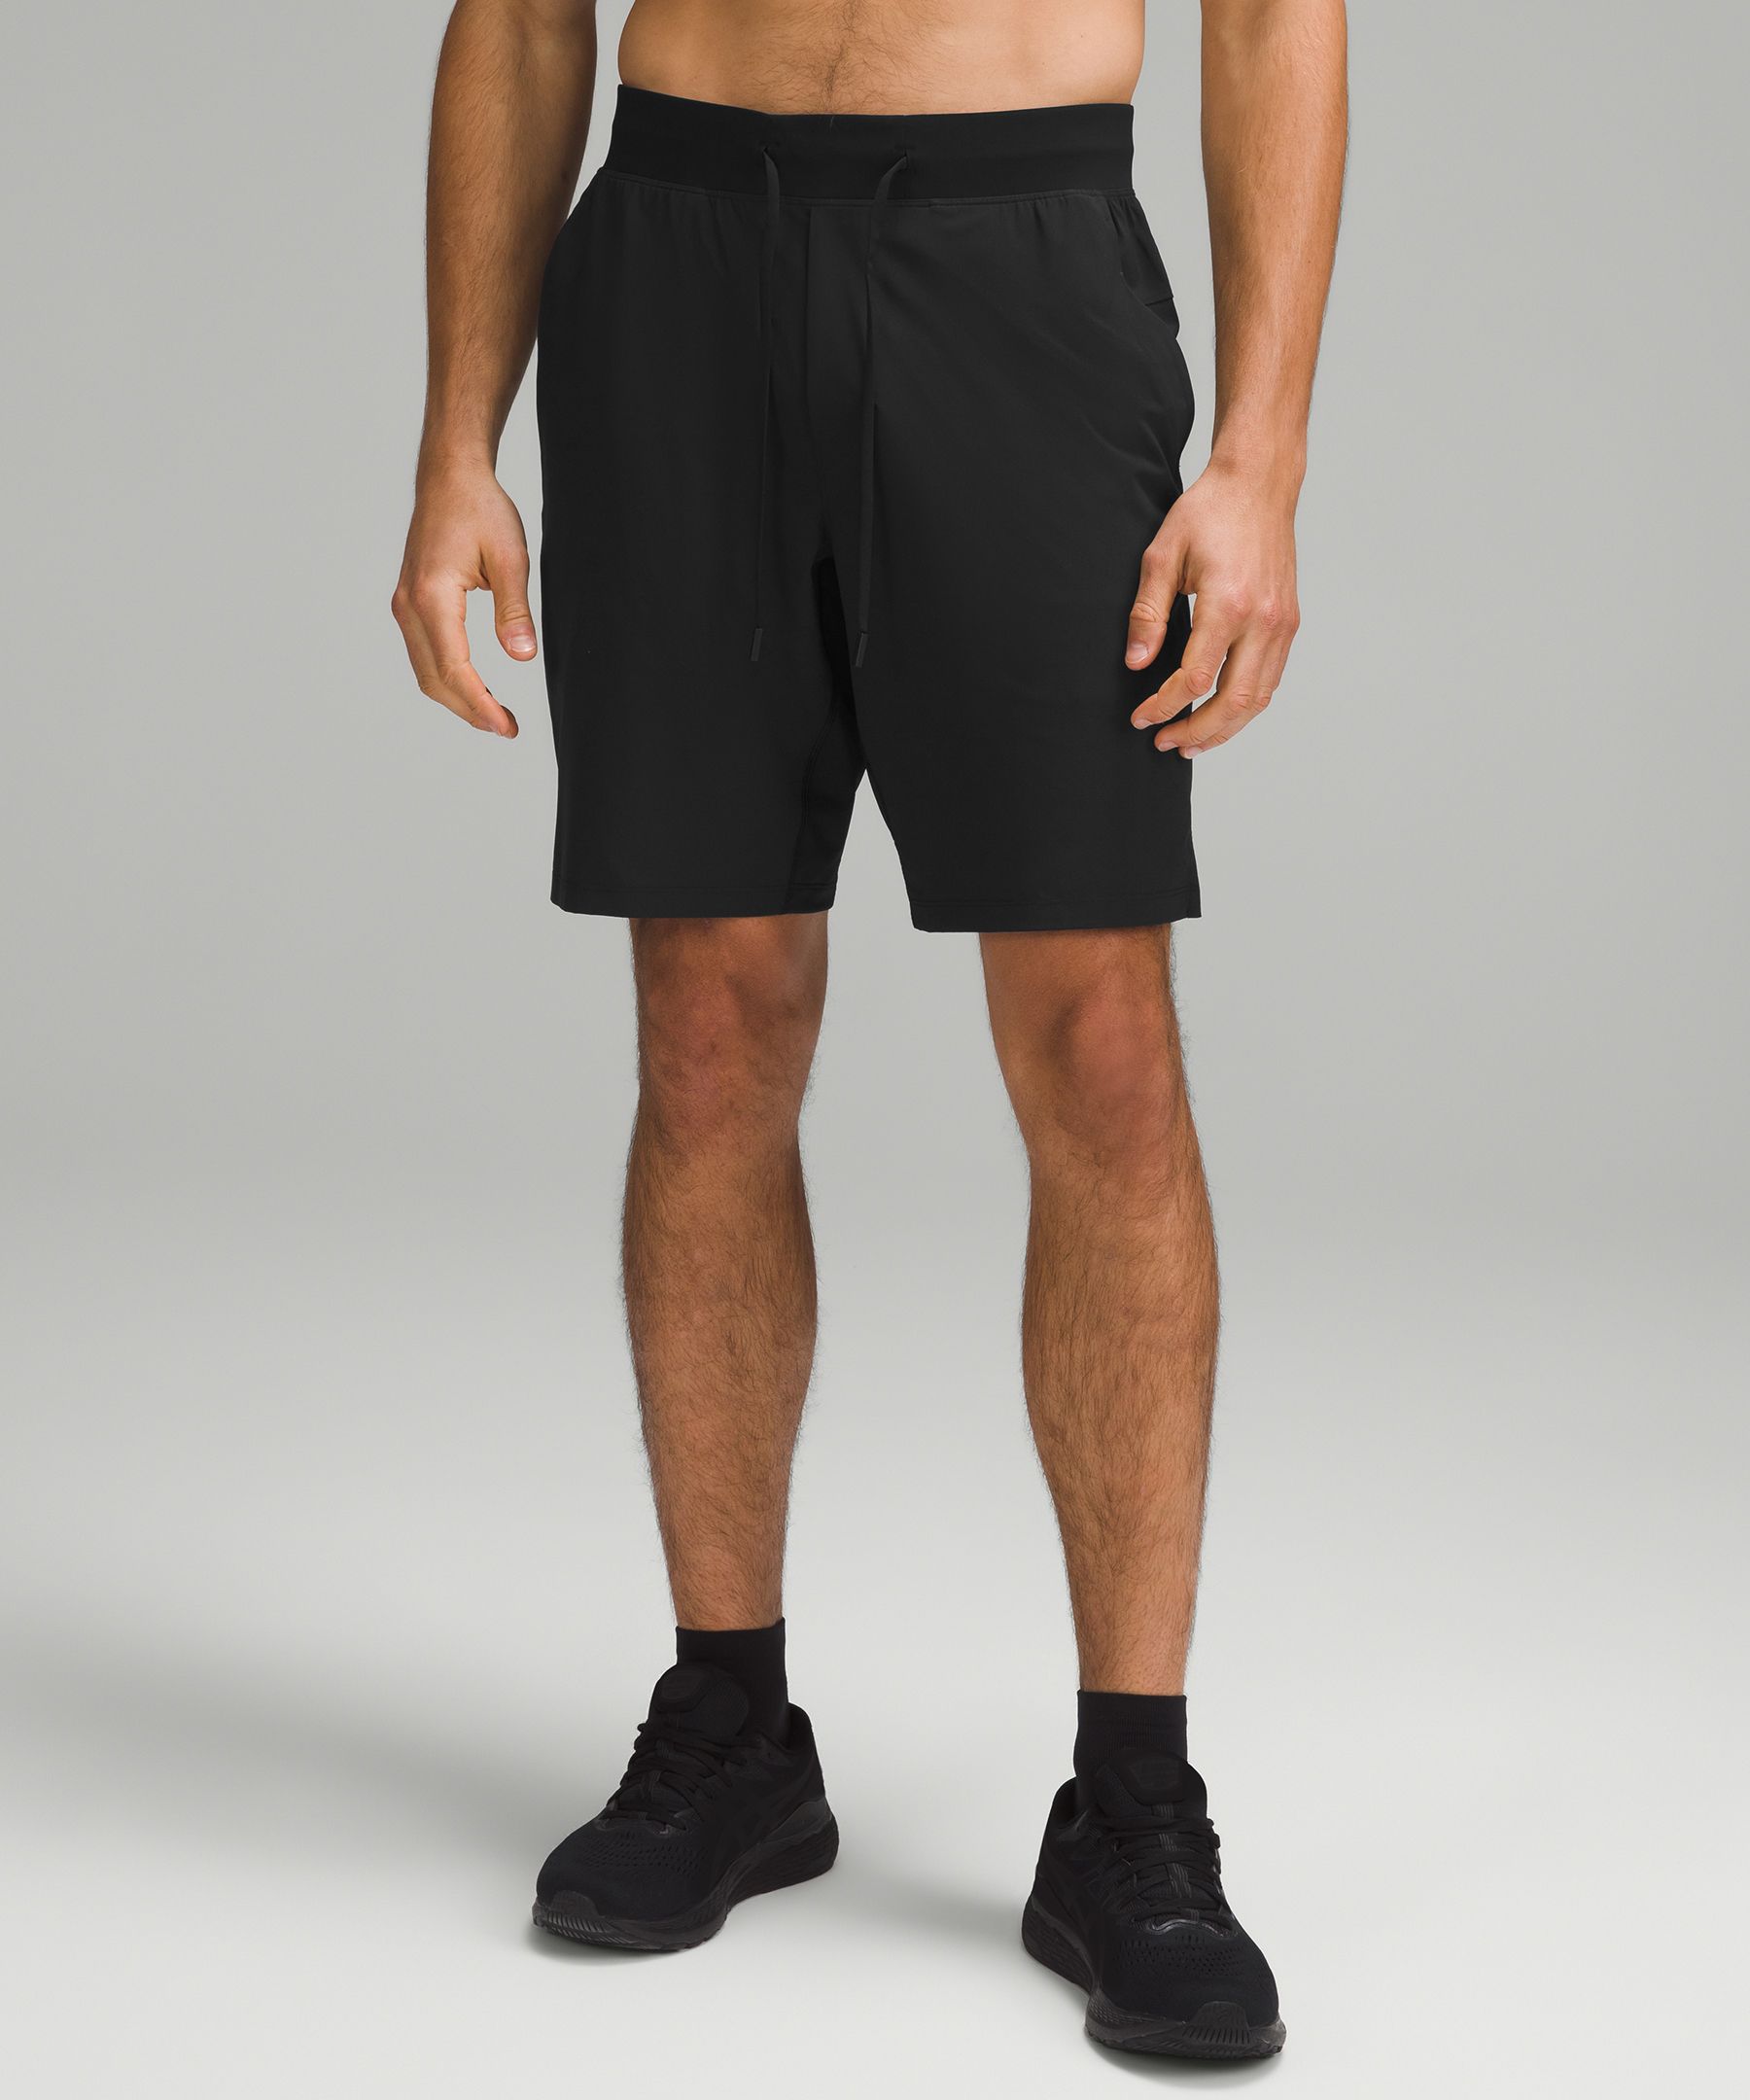 lululemon men's 9 inch shorts